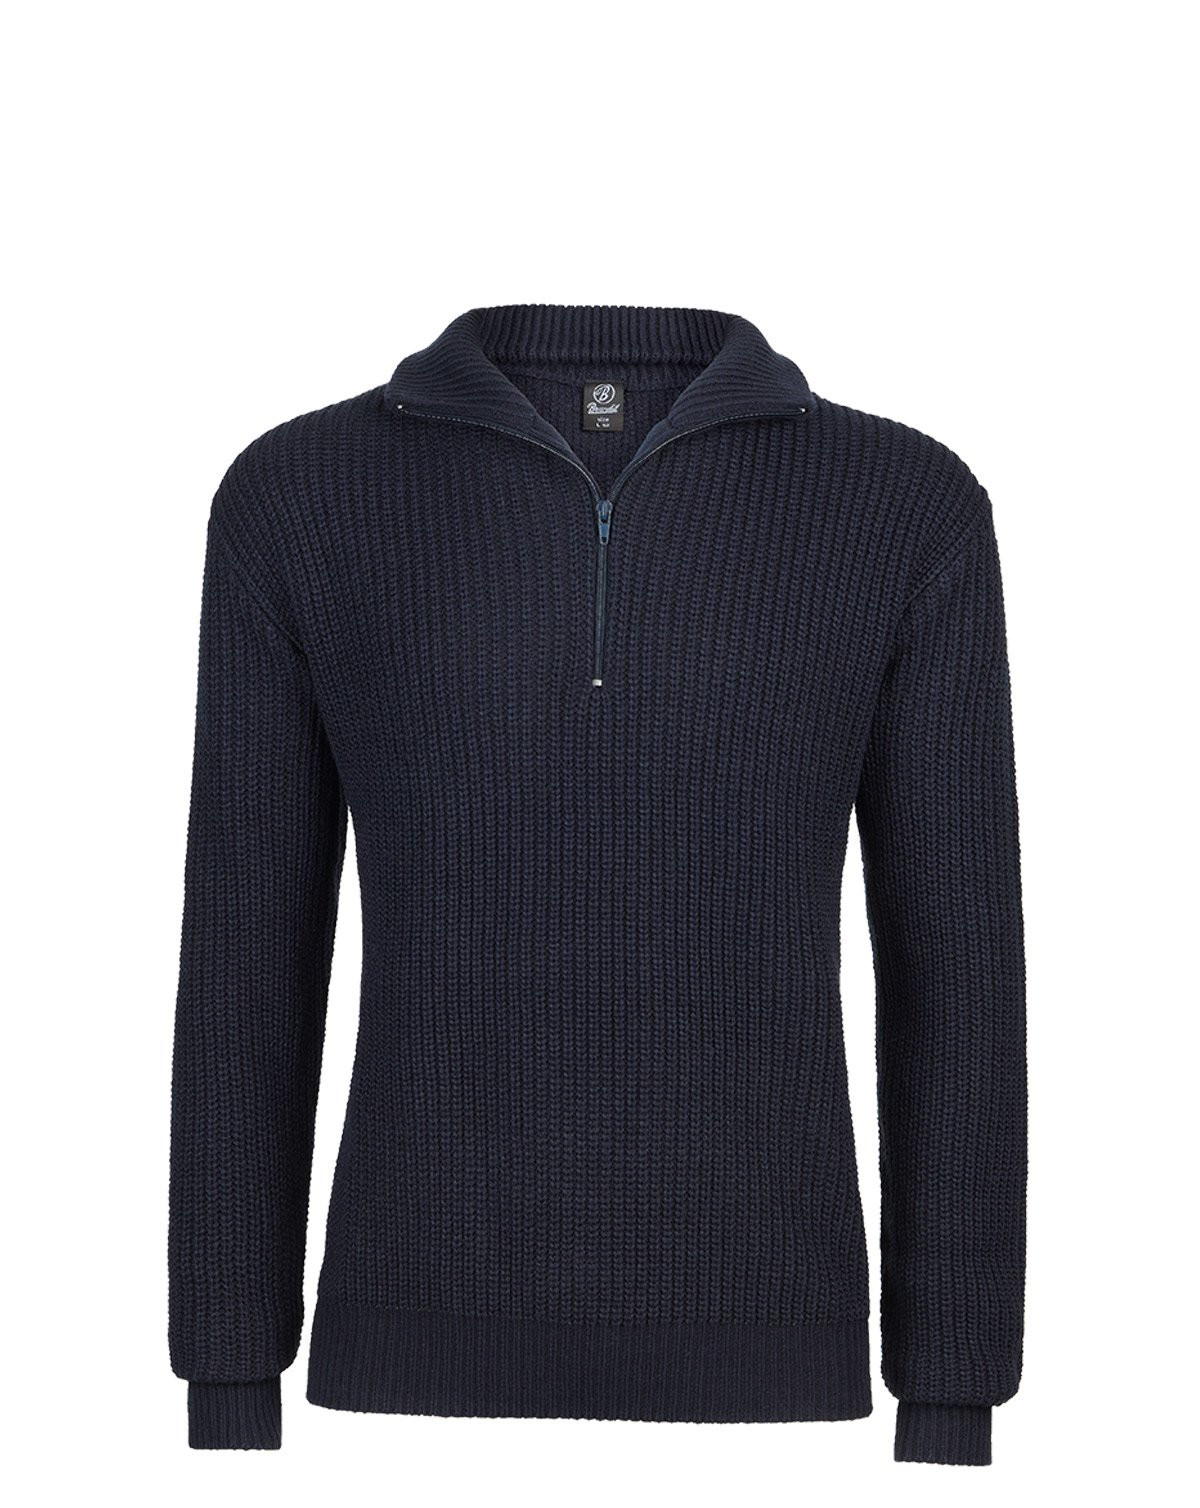 Brandit Marine Pullover Troyer Sweater (Navy, 4XL)